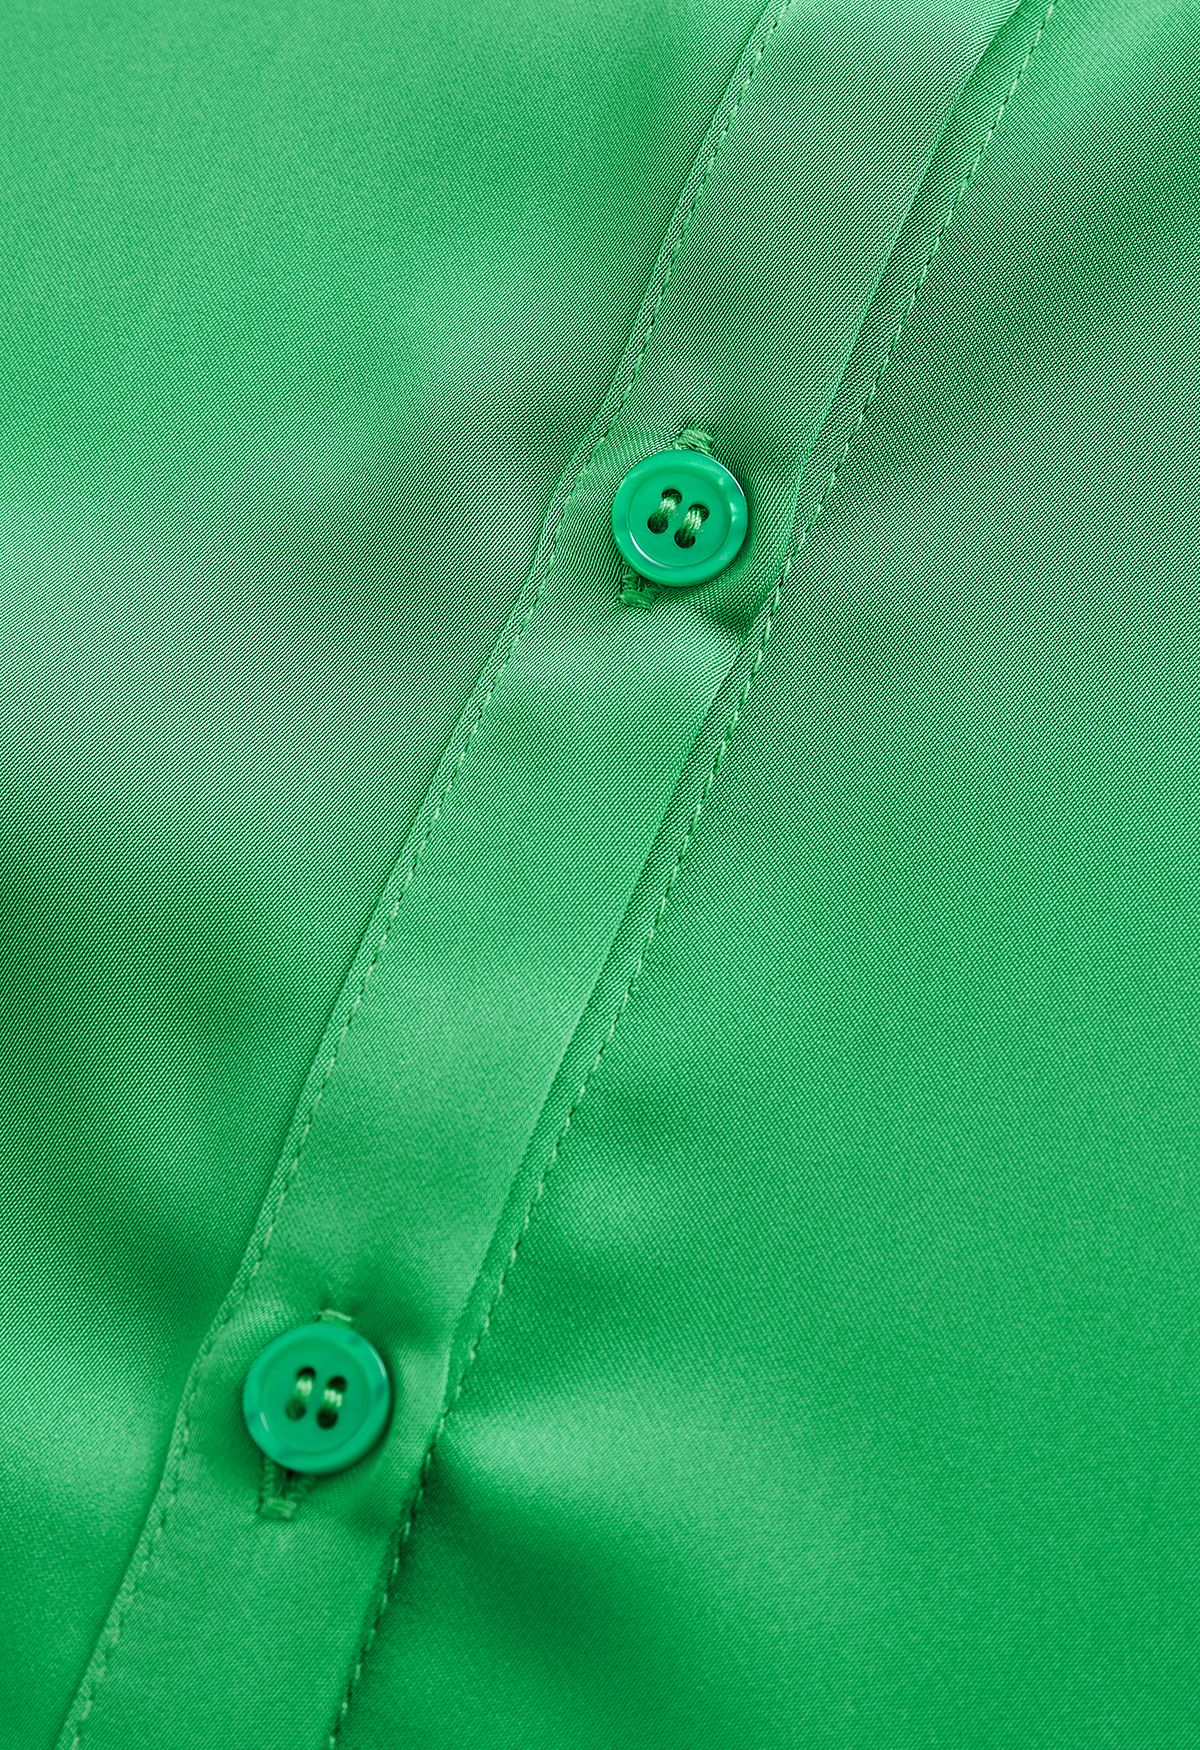 Camisa abotoada com acabamento acetinado em verde